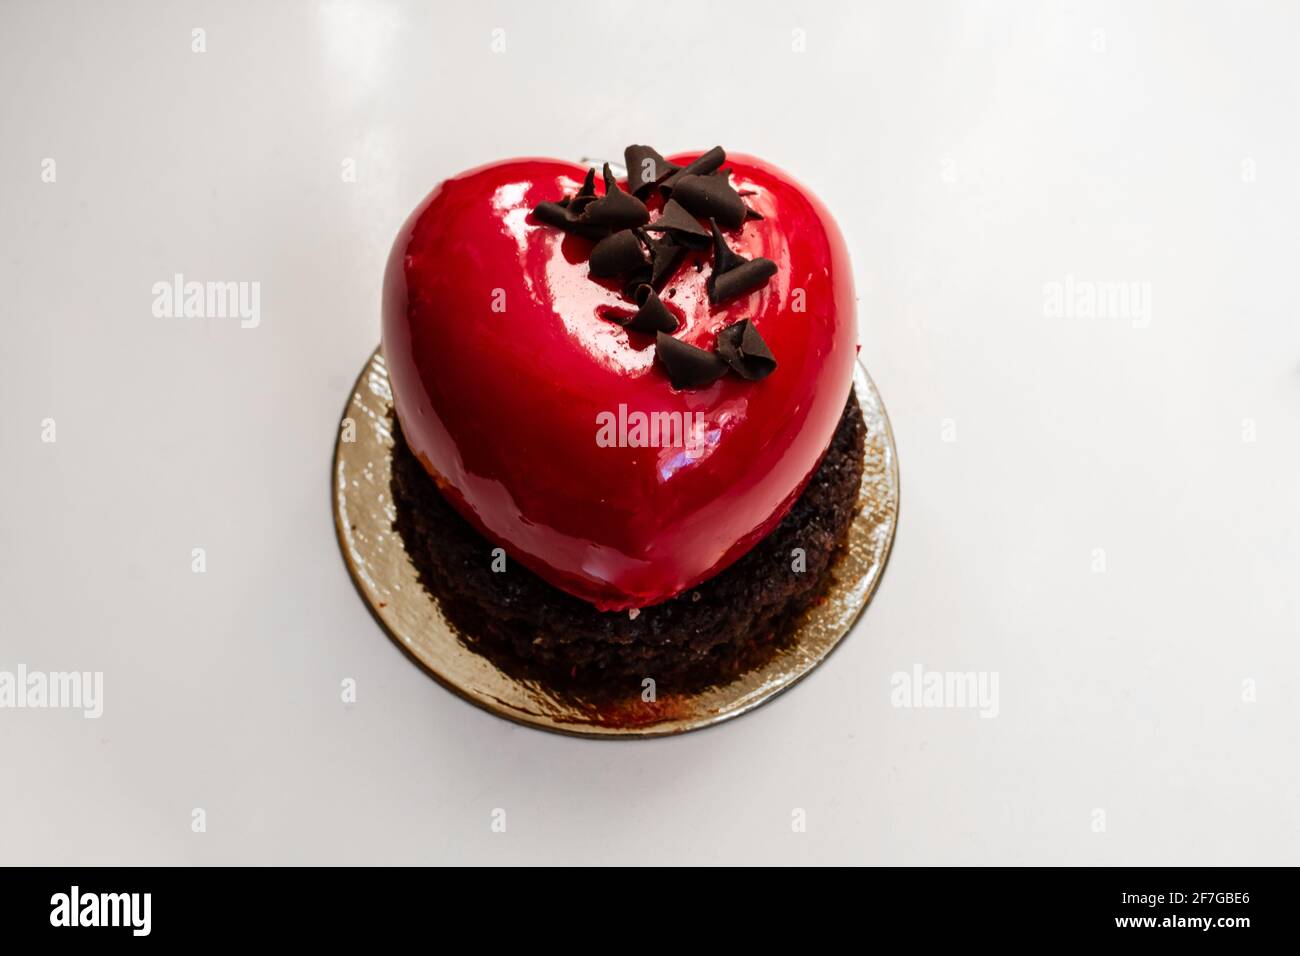 Una torta in miniatura di champagne rosso ciliegia a forma di cuore e cioccolato alle bacche realizzata per San Valentino 2021, Ontario, Canada. Foto Stock